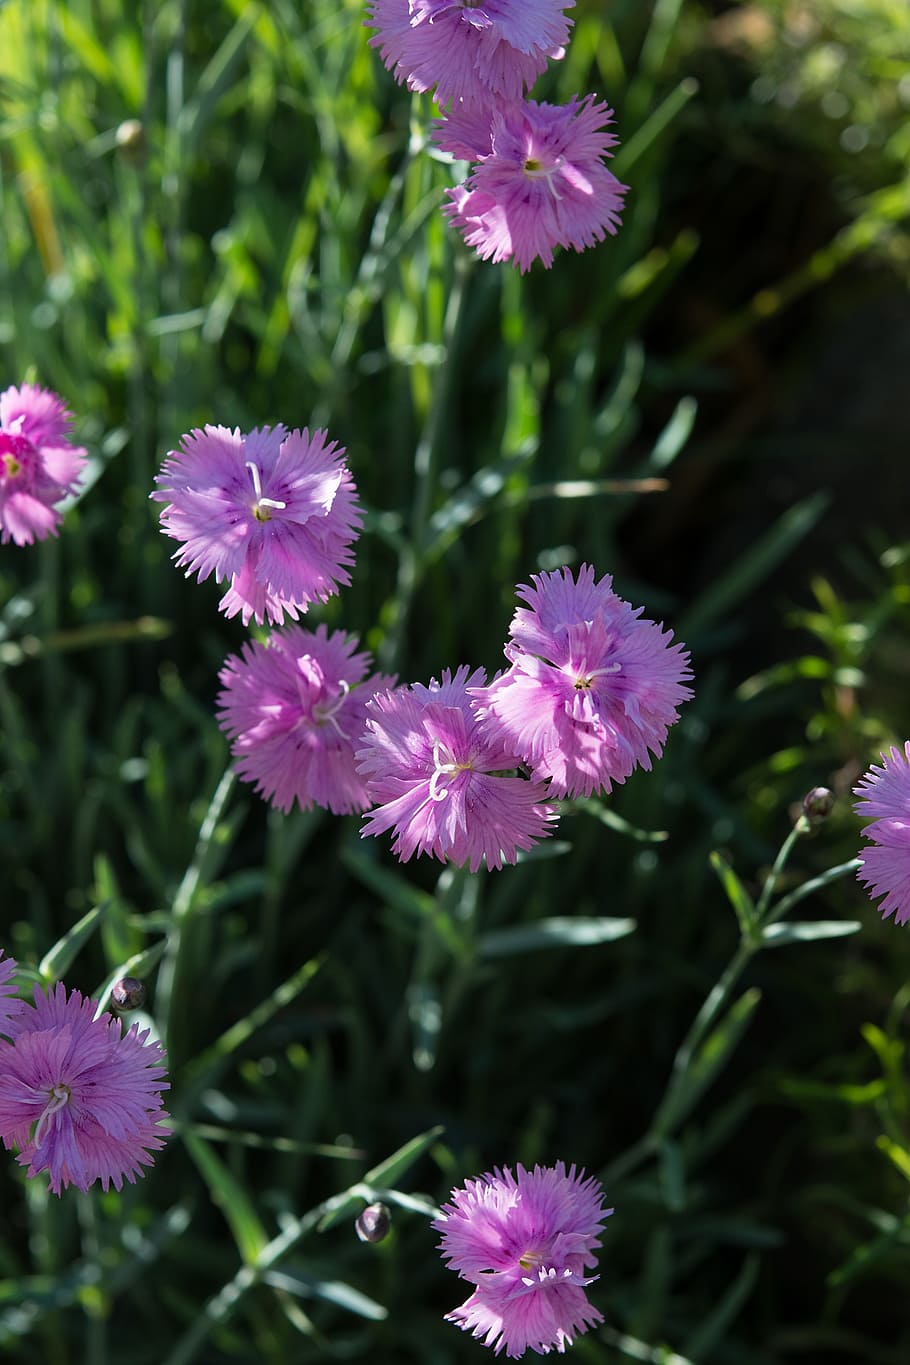 bantal bunga, bunga merah muda, heather-cengkeh, dianthus deltoides, anyelir, keluarga anyelir, taman batu, taman, di taman, penutup tanah